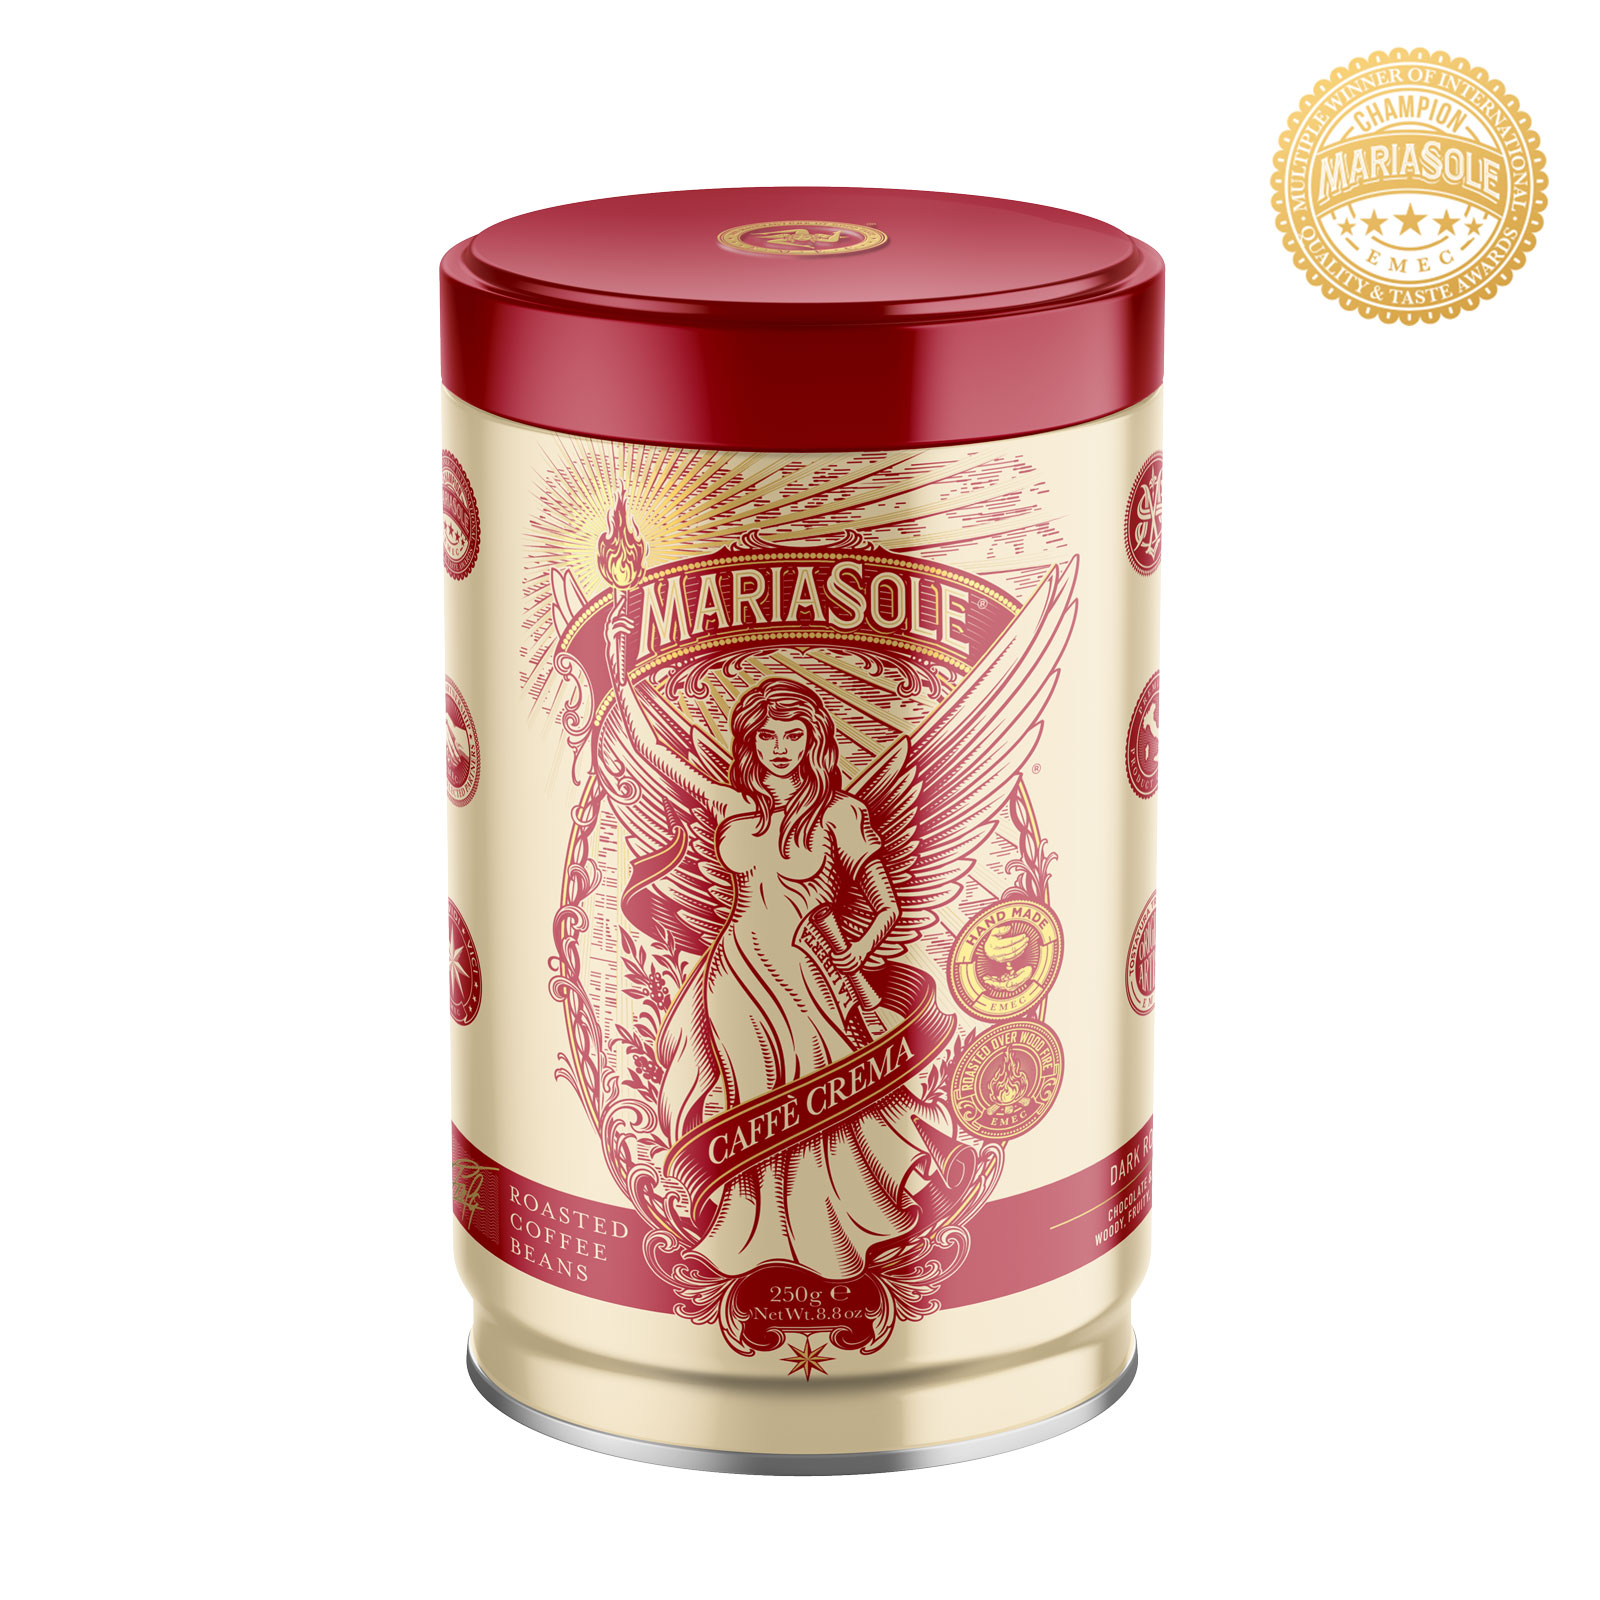 MARIASOLE - Caffè  Crema - 250g - Bohnen